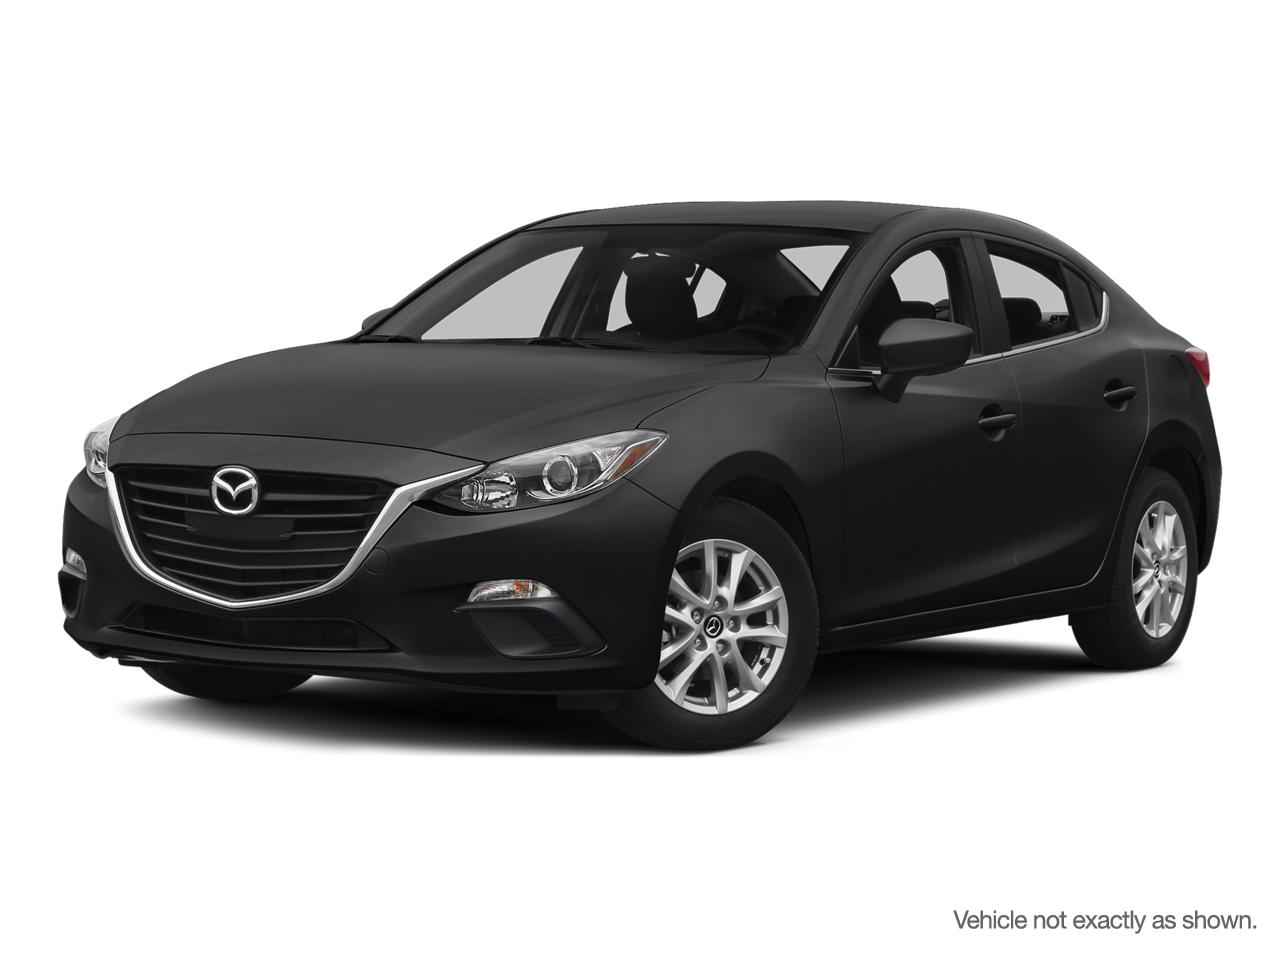 2015 Mazda Mazda3 GS-SKY 6sp